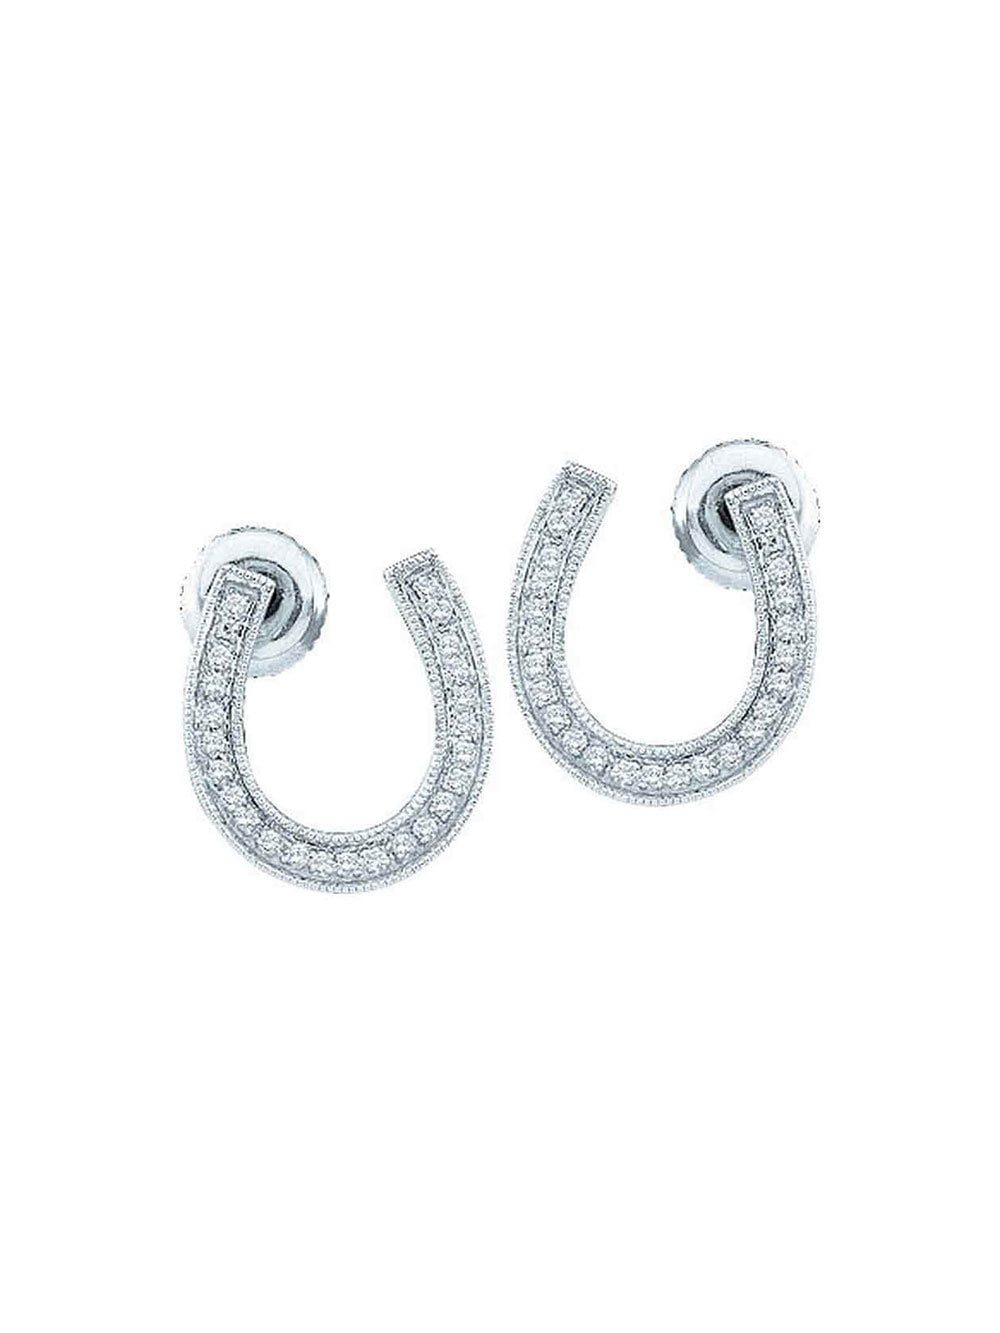 Sterling Silver Diamond Horseshoe Stud Earrings Good Luck Studs Screwback Style Fancy 1/20 Cttw